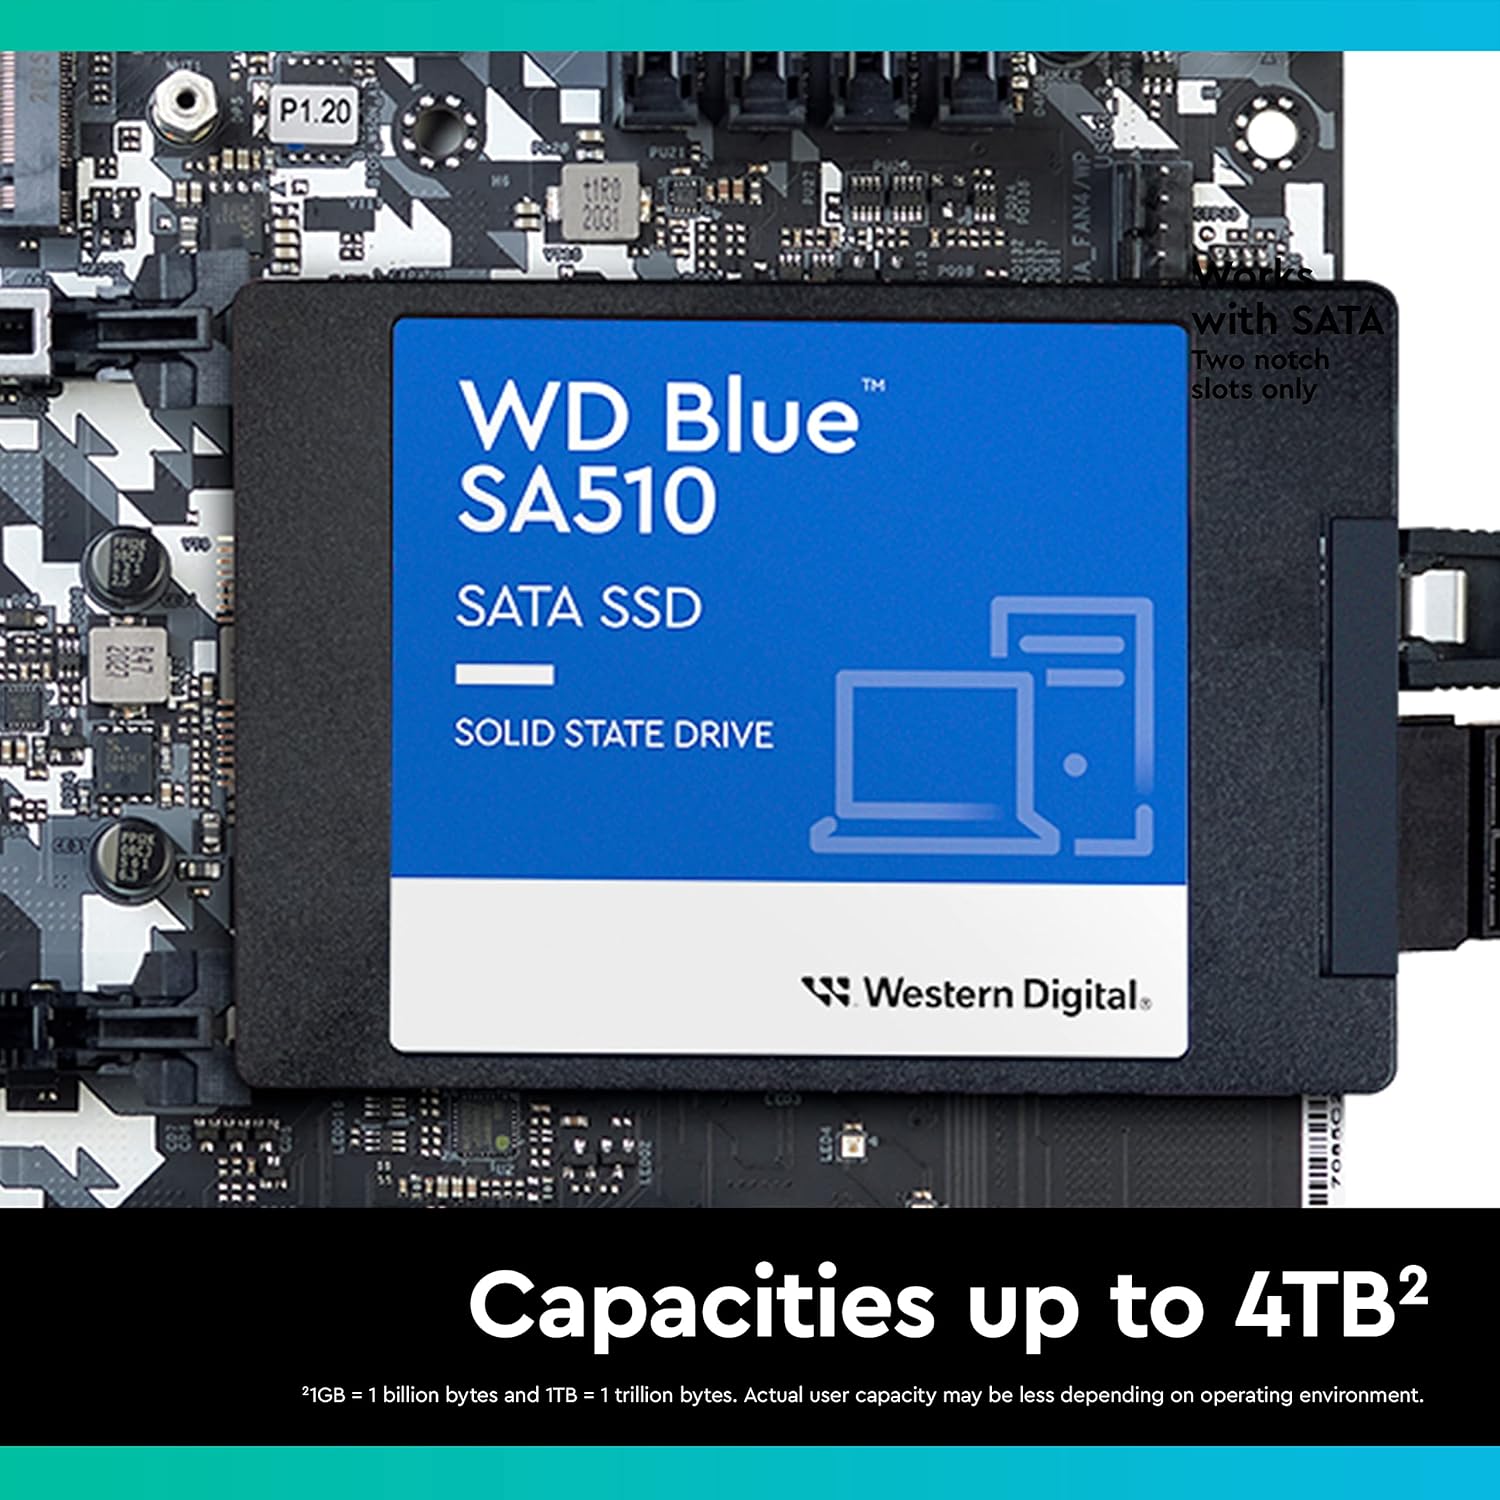 SSD SATA 250GB SA510 WD BLUE SATA